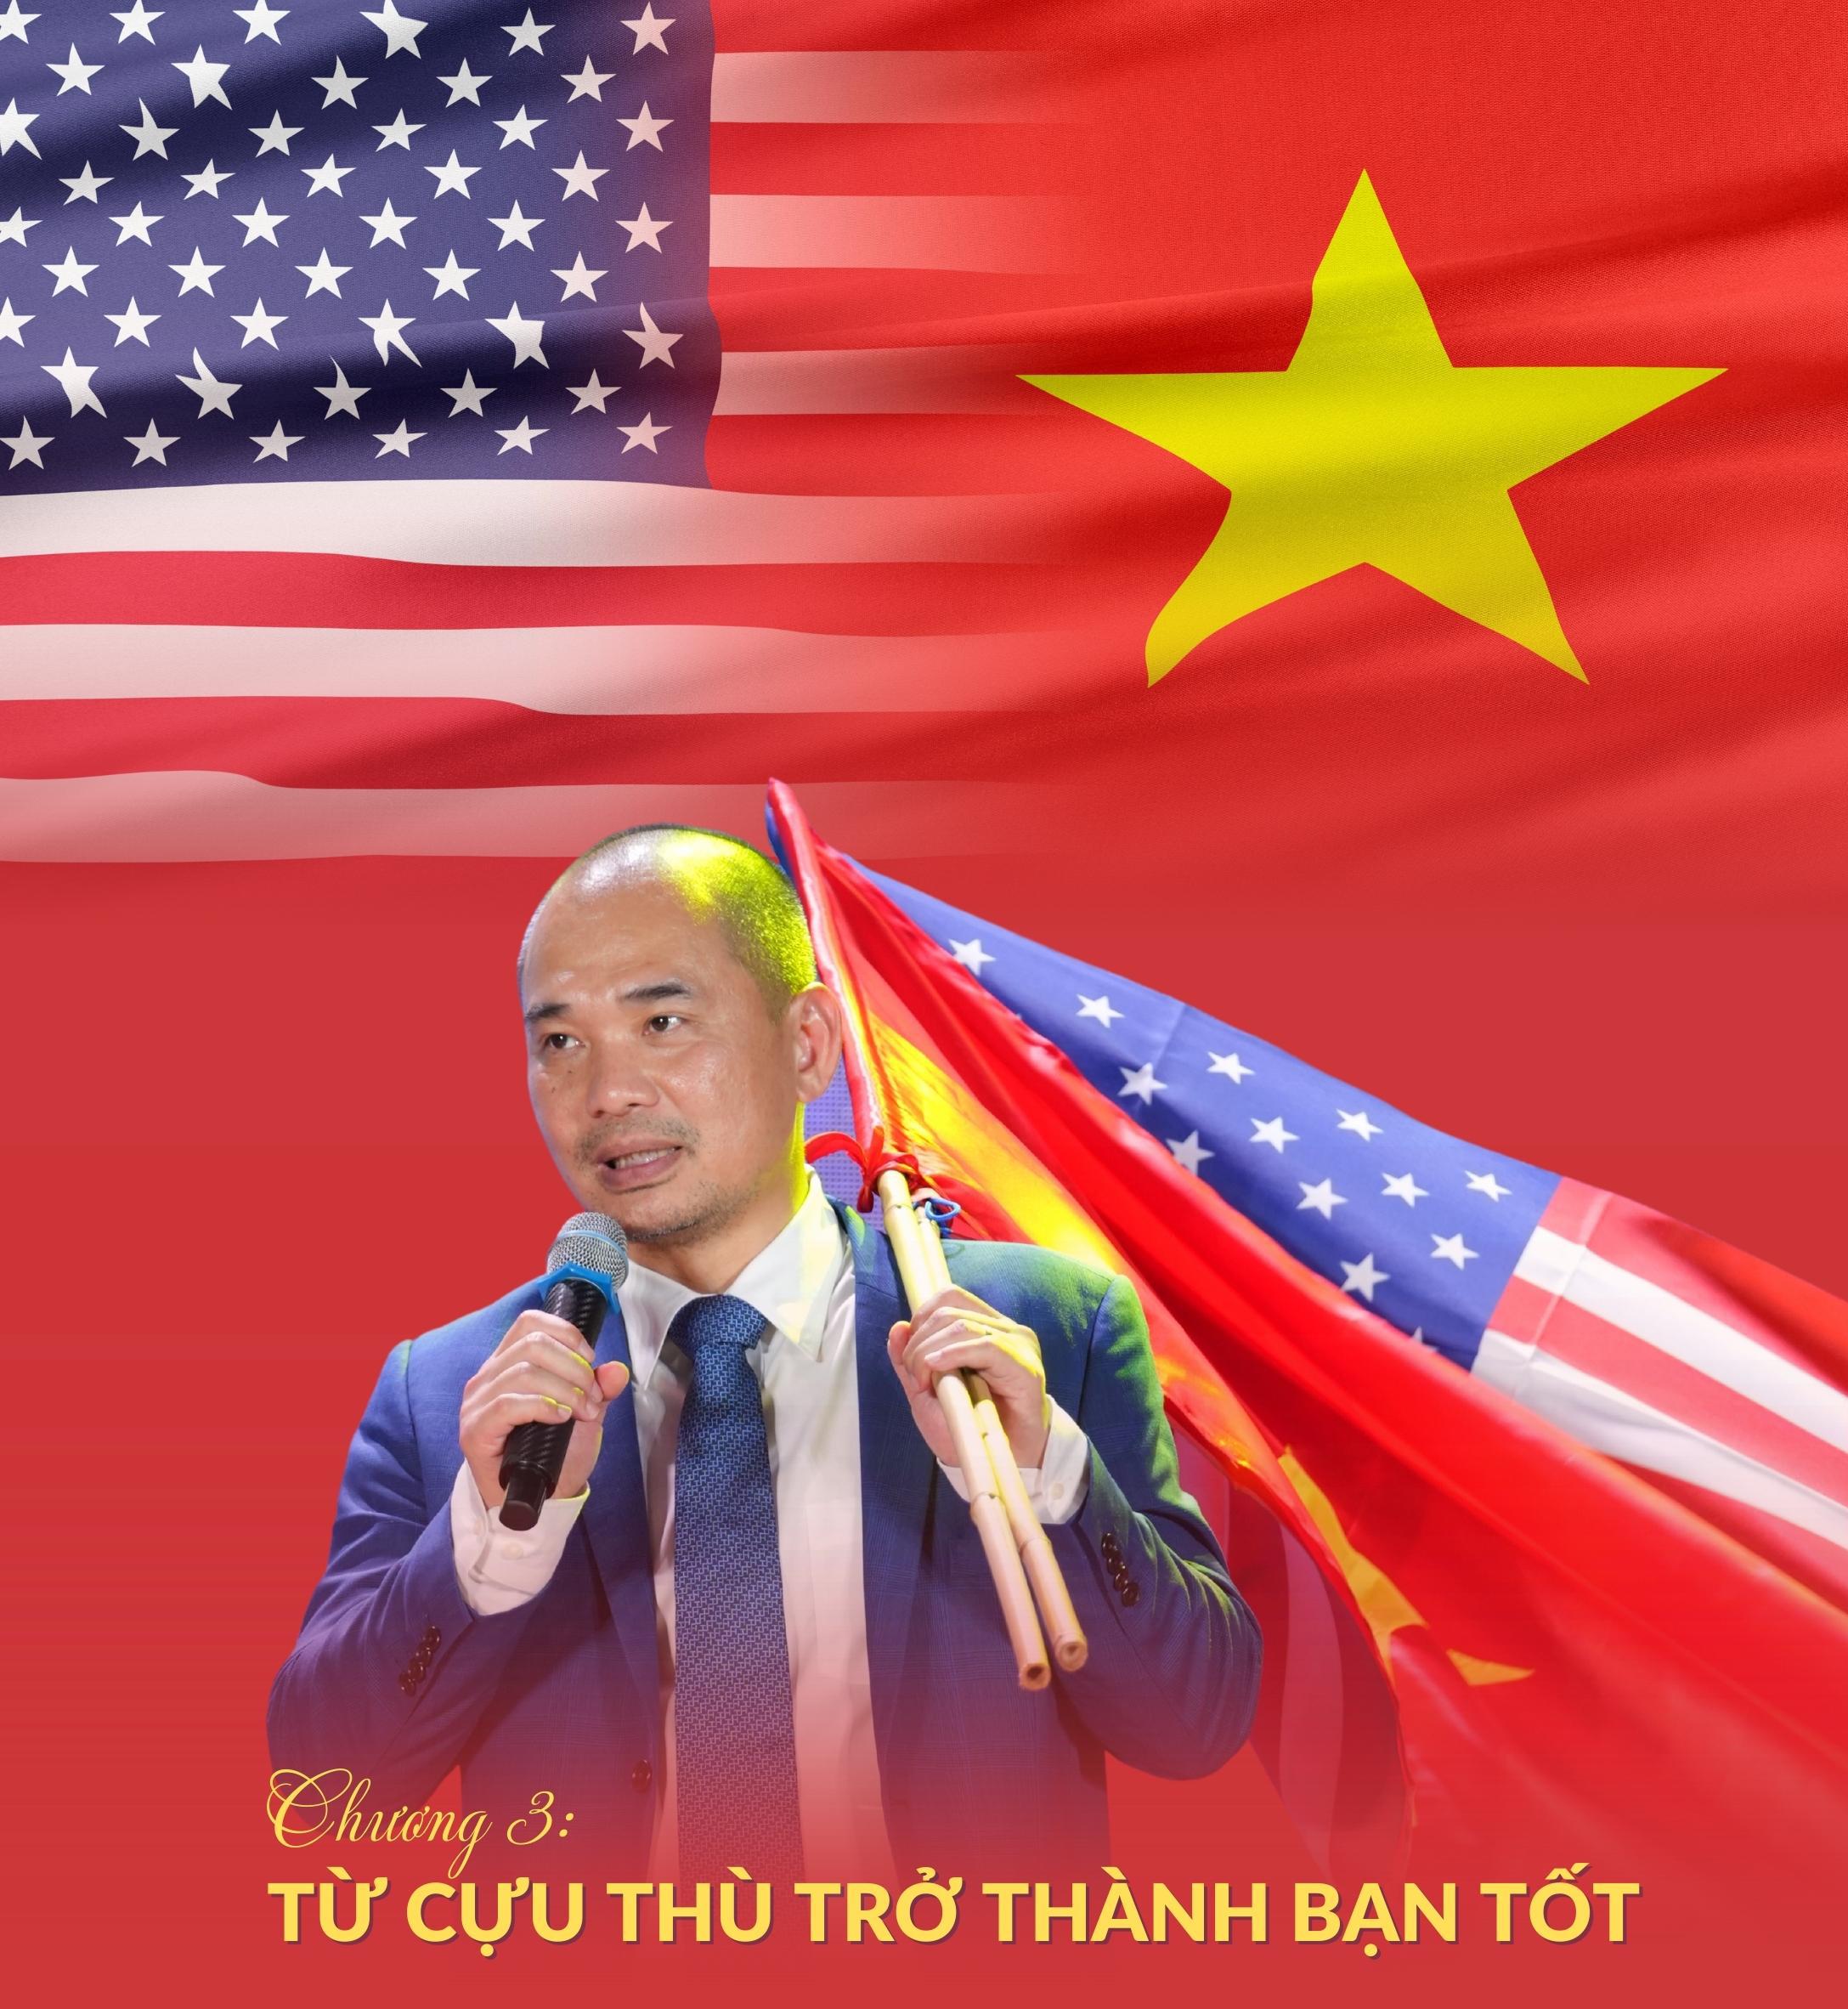 [Megastory] Ông Phạm Tuấn Anh, người sáng lập trường Minh Việt (MVA): Chương 3 - Từ cựu thù trở thành bạn tốt